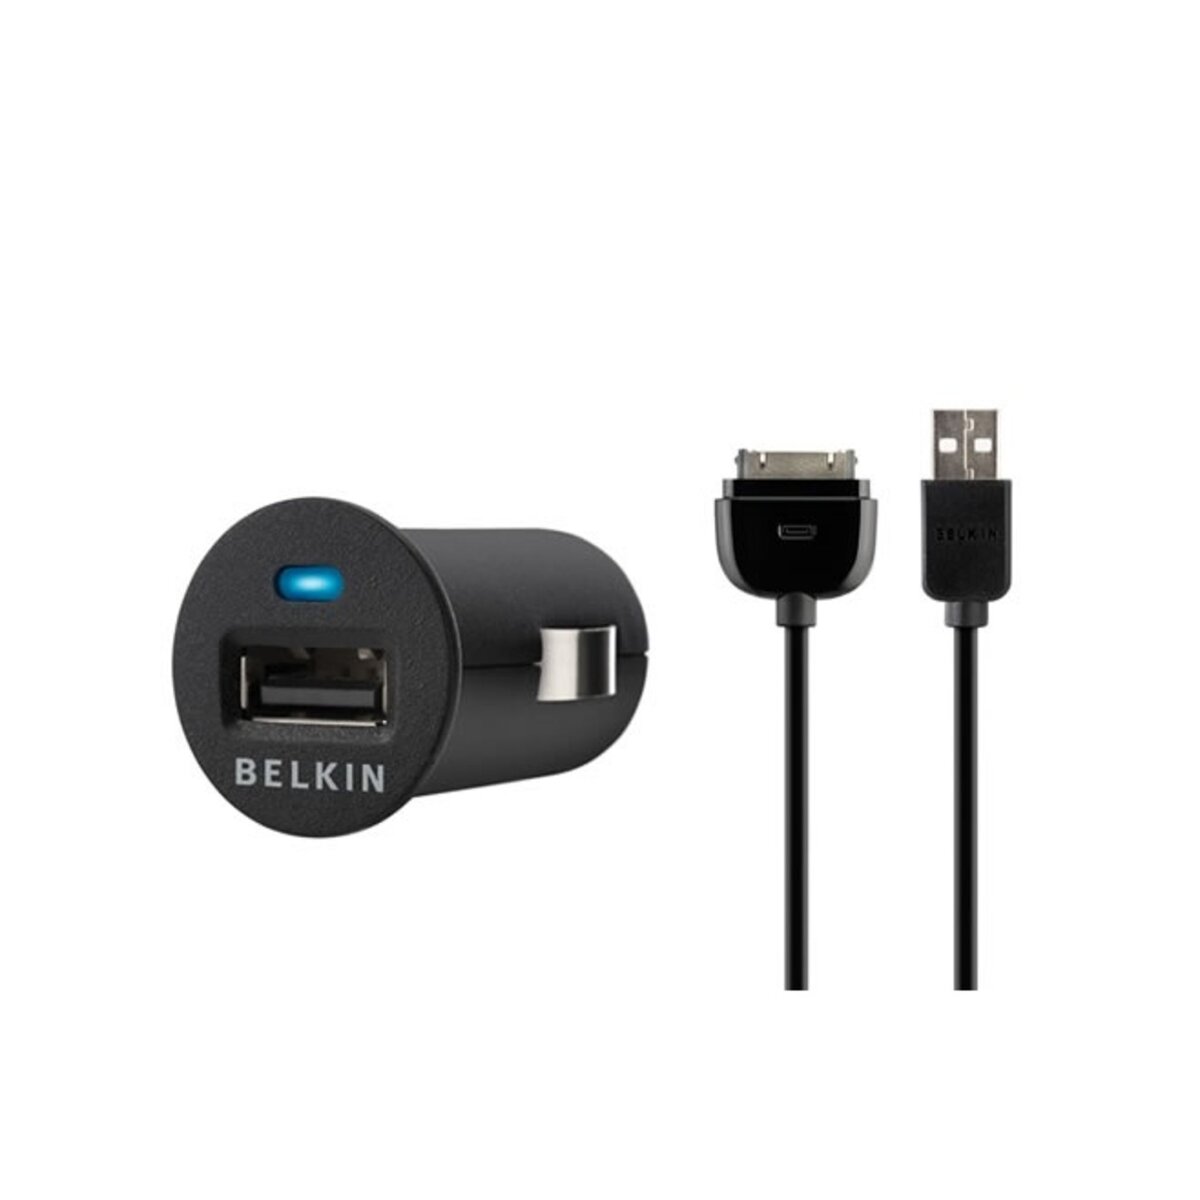 BELKIN Chargeur pour téléphone Micro Chargeur allume cigare avec cable Sync pour iPhone